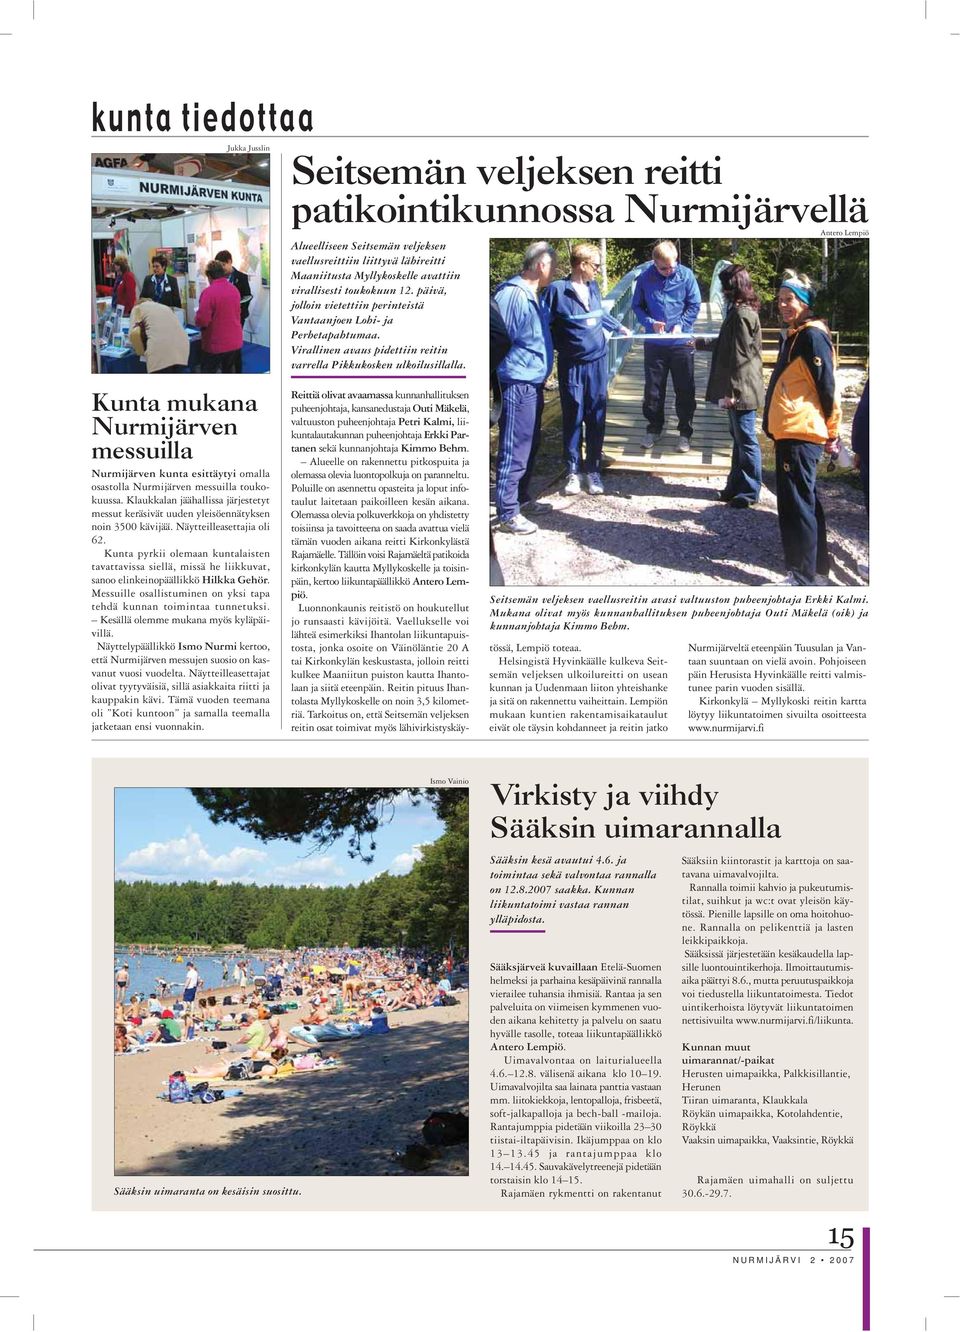 Antero Lempiö Kunta mukana Nurmijärven messuilla Nurmijärven kunta esittäytyi omalla osastolla Nurmijärven messuilla toukokuussa.